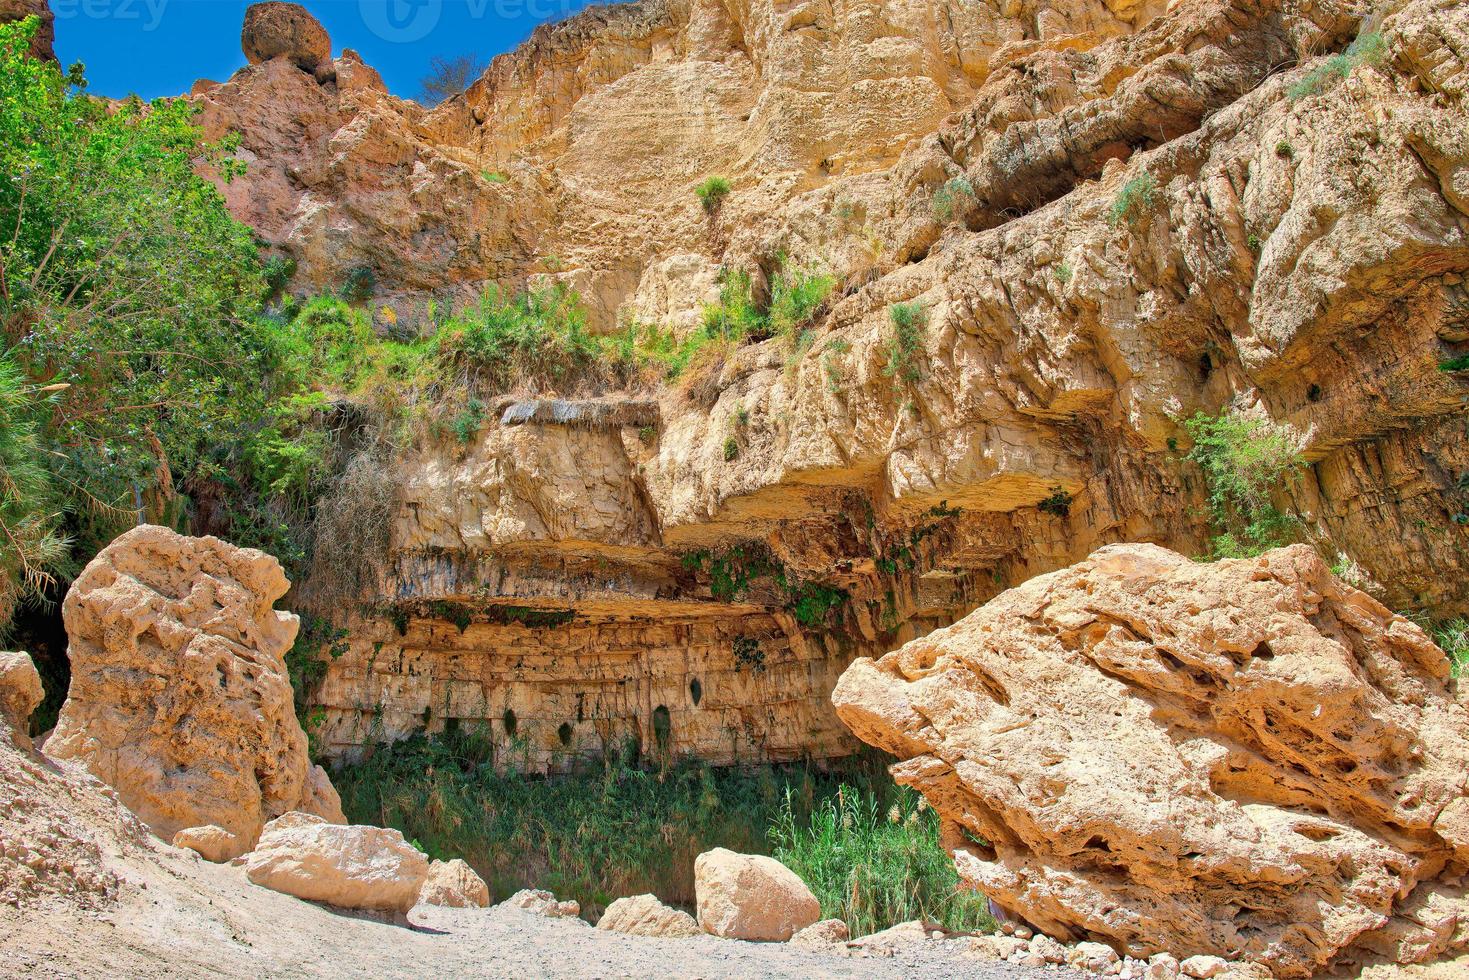 oasis del parque nacional ein gedi en israel foto